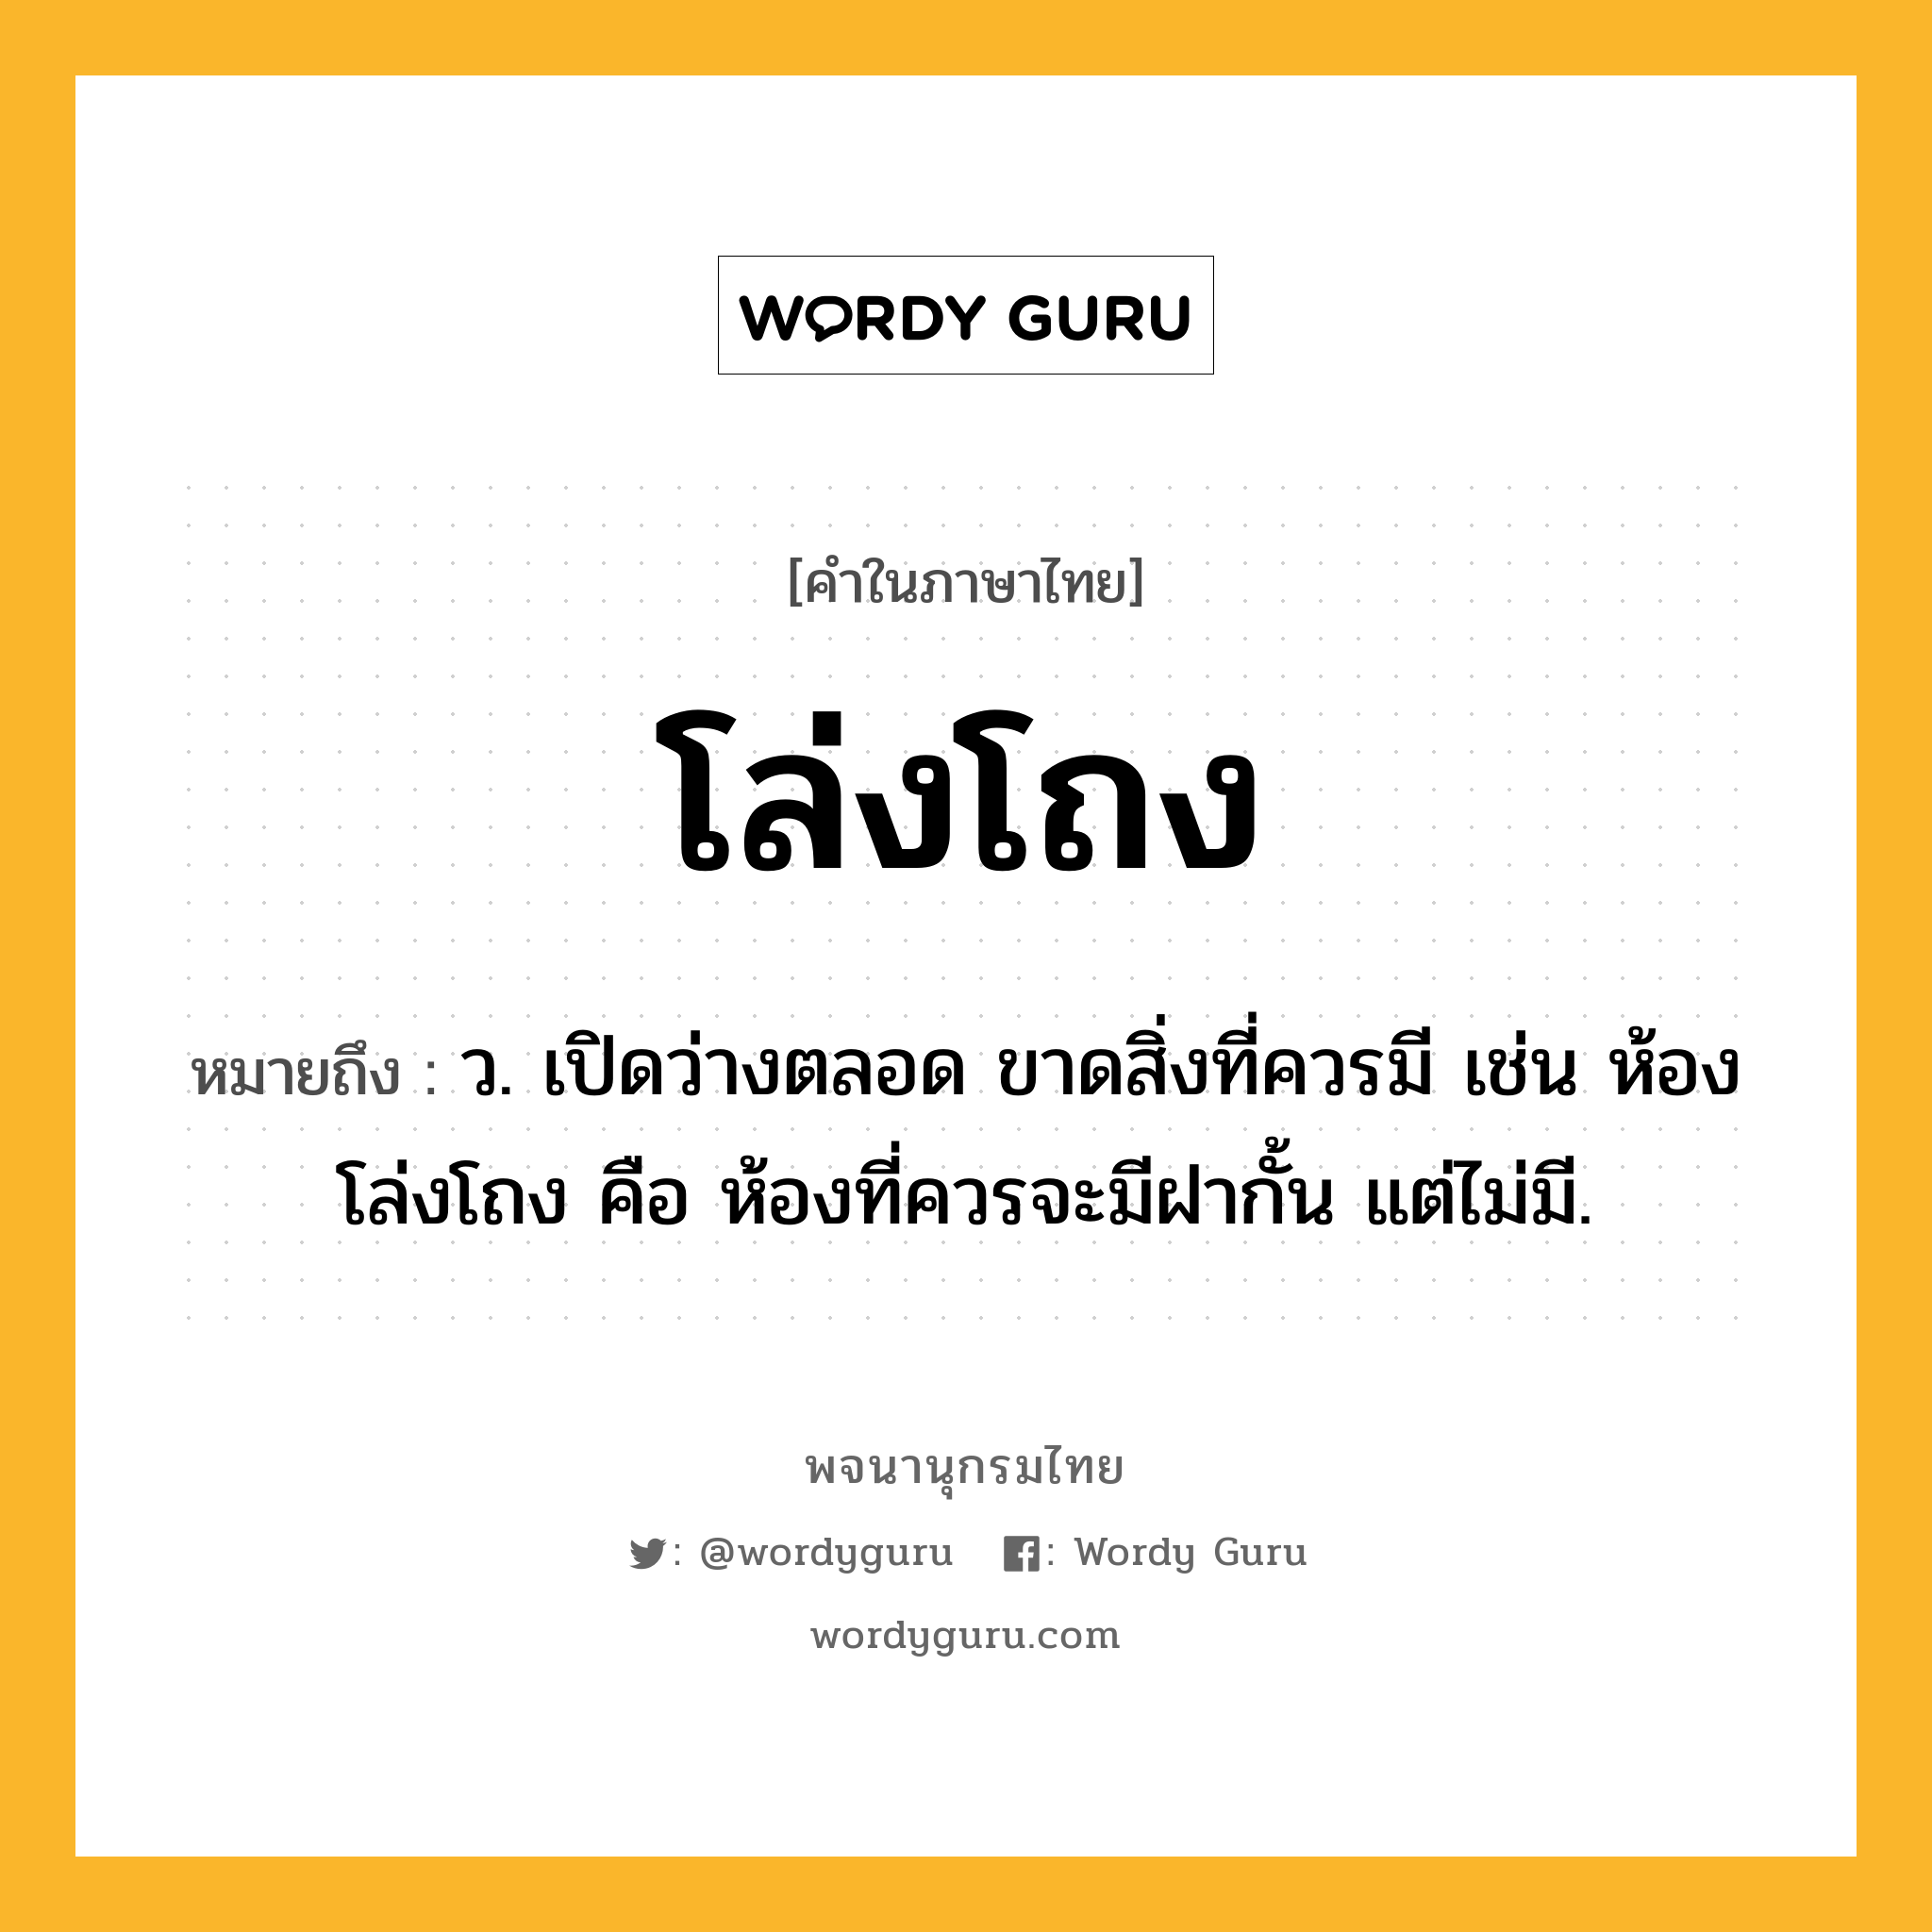 โล่งโถง ความหมาย หมายถึงอะไร?, คำในภาษาไทย โล่งโถง หมายถึง ว. เปิดว่างตลอด ขาดสิ่งที่ควรมี เช่น ห้องโล่งโถง คือ ห้องที่ควรจะมีฝากั้น แต่ไม่มี.